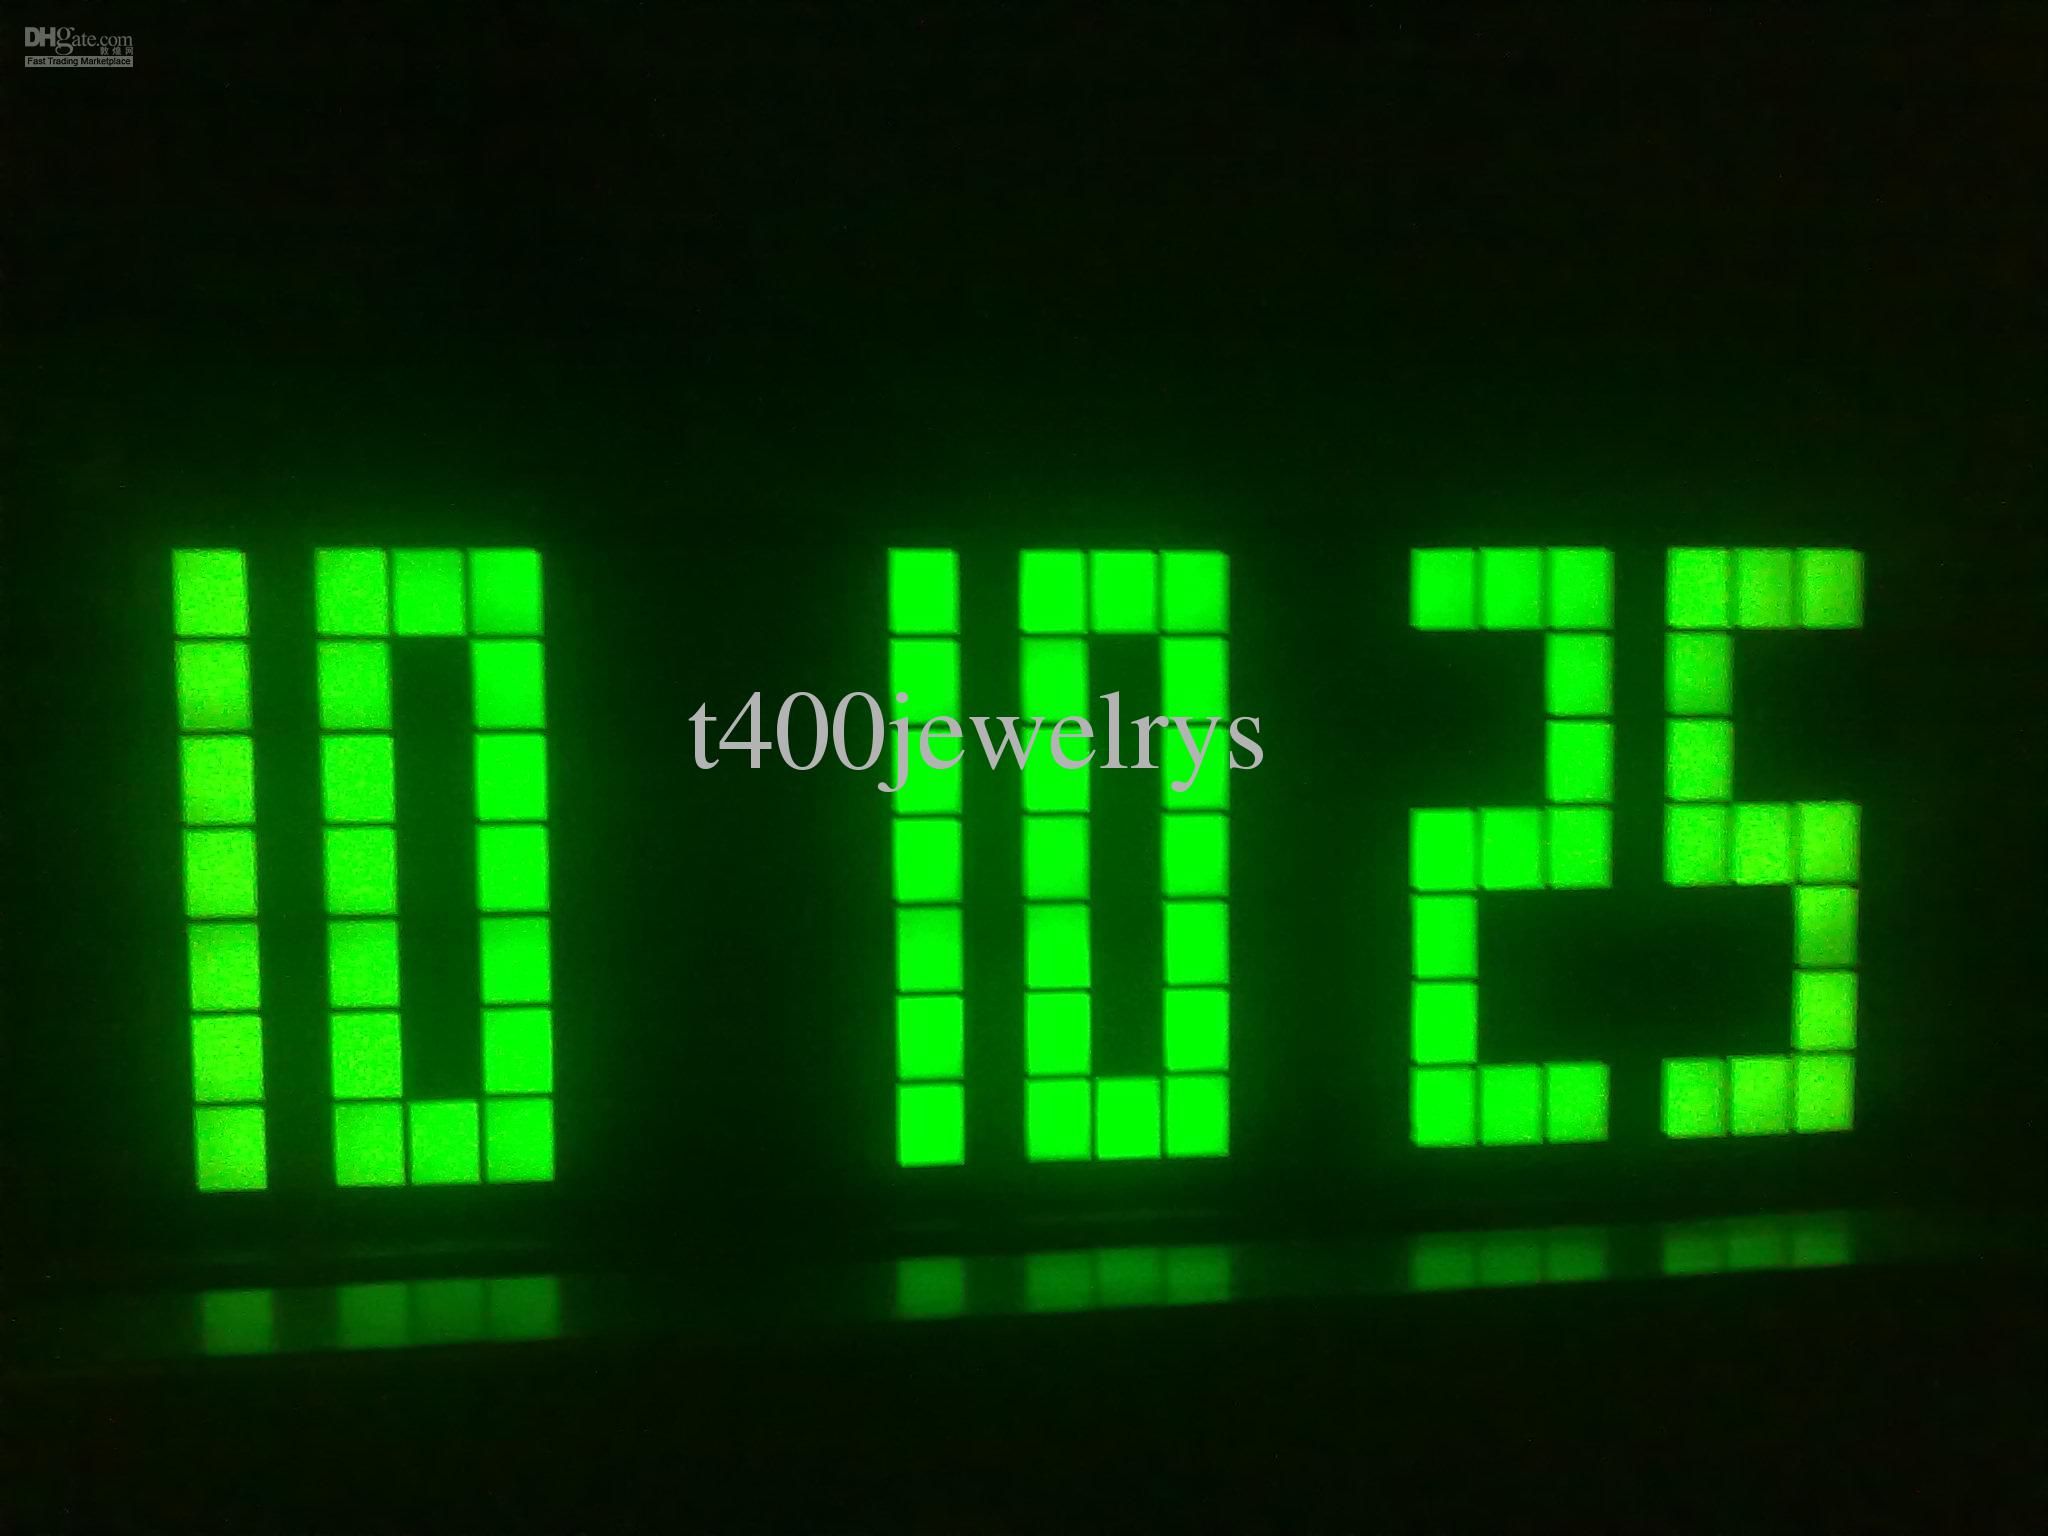 Wallpaper Countdown Clock Free - WallpaperSafari